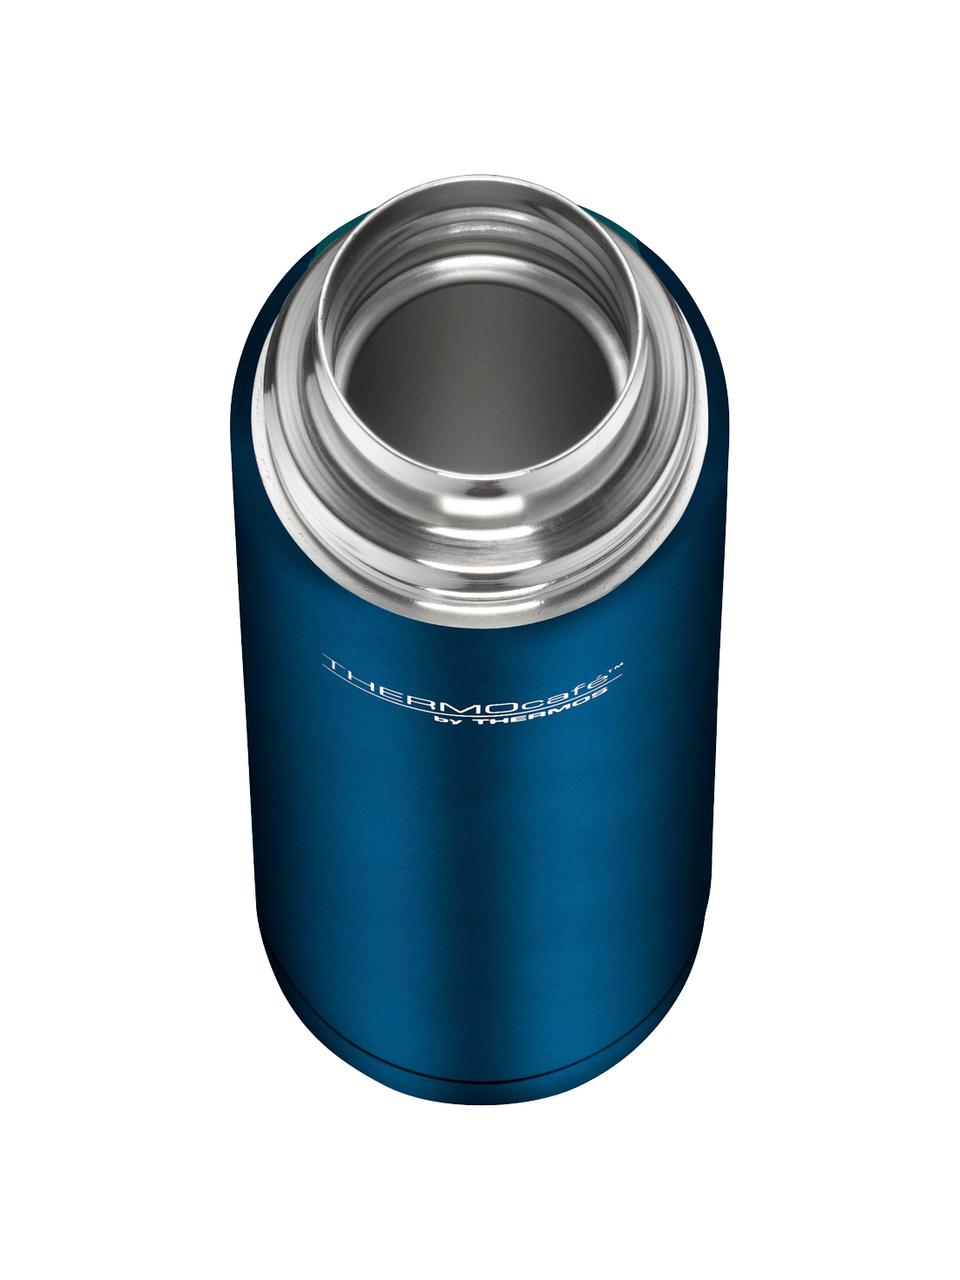 Bottiglia thermos TC, 500 ml, Coperchio: acciaio inossidabile, pla, Blu scuro opaco, 500 ml